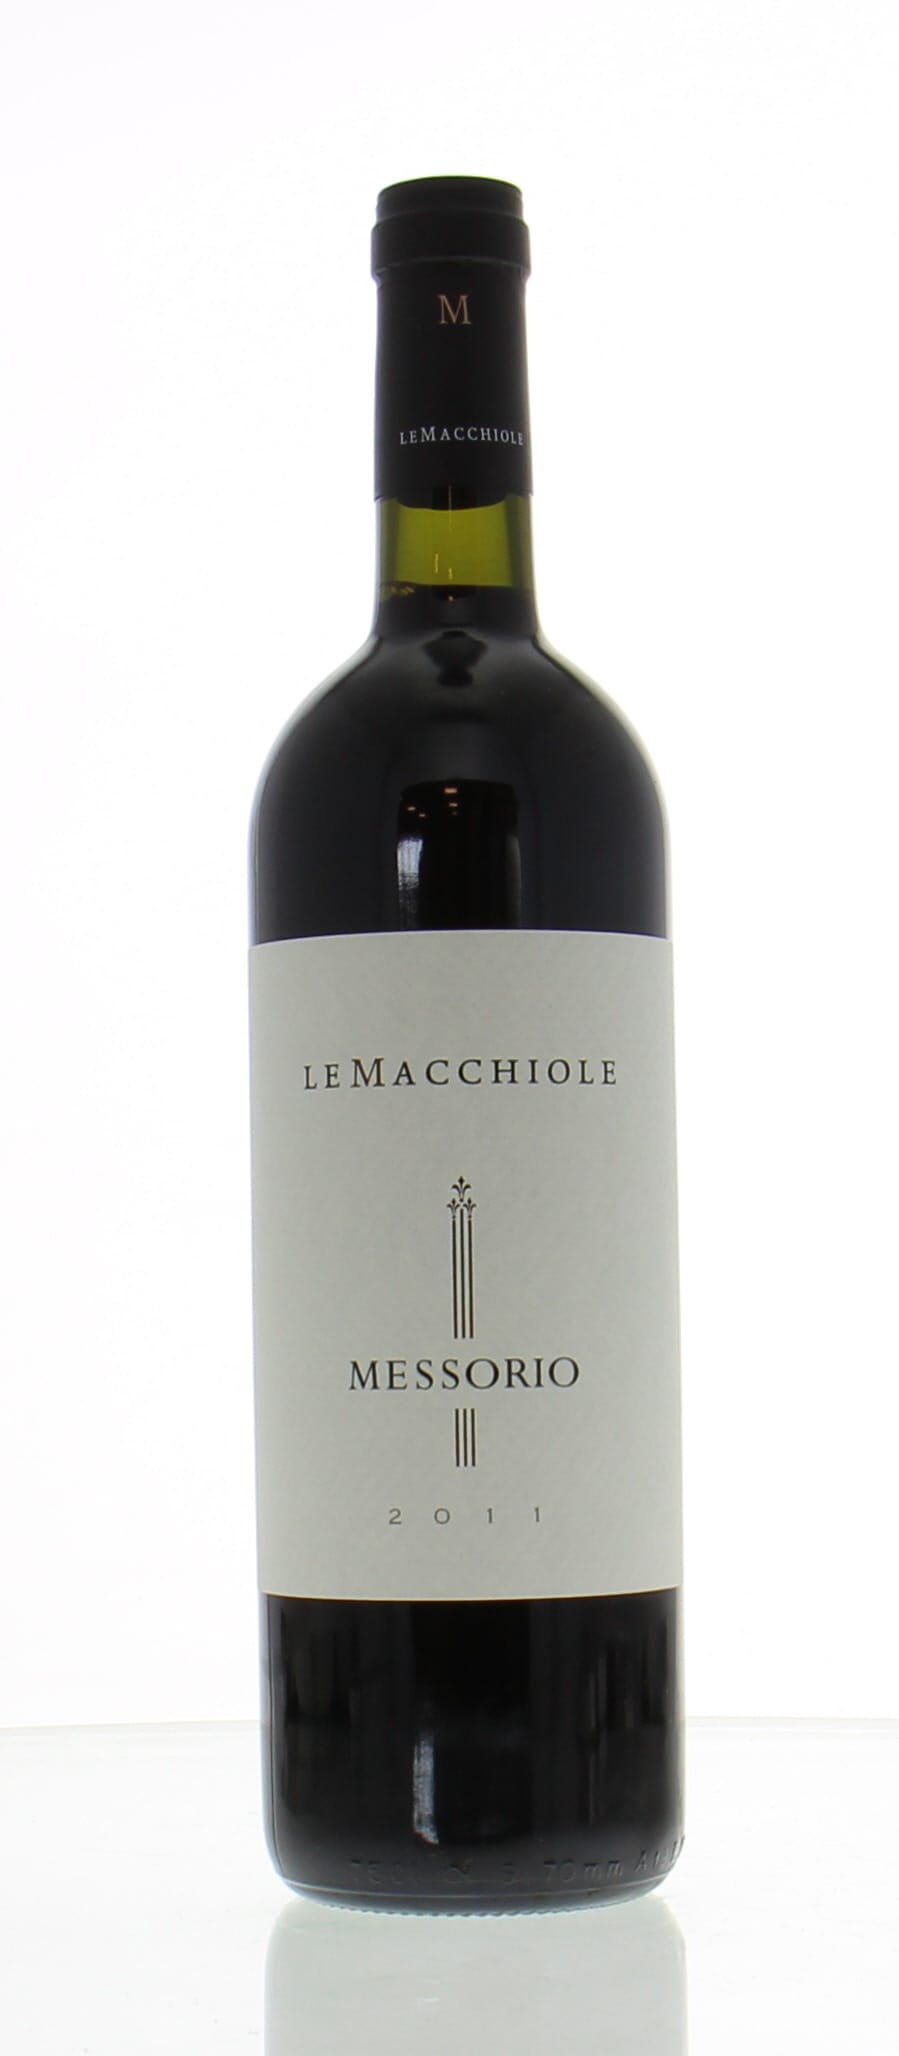 Le Macchiole - Messorio 2011 Perfect